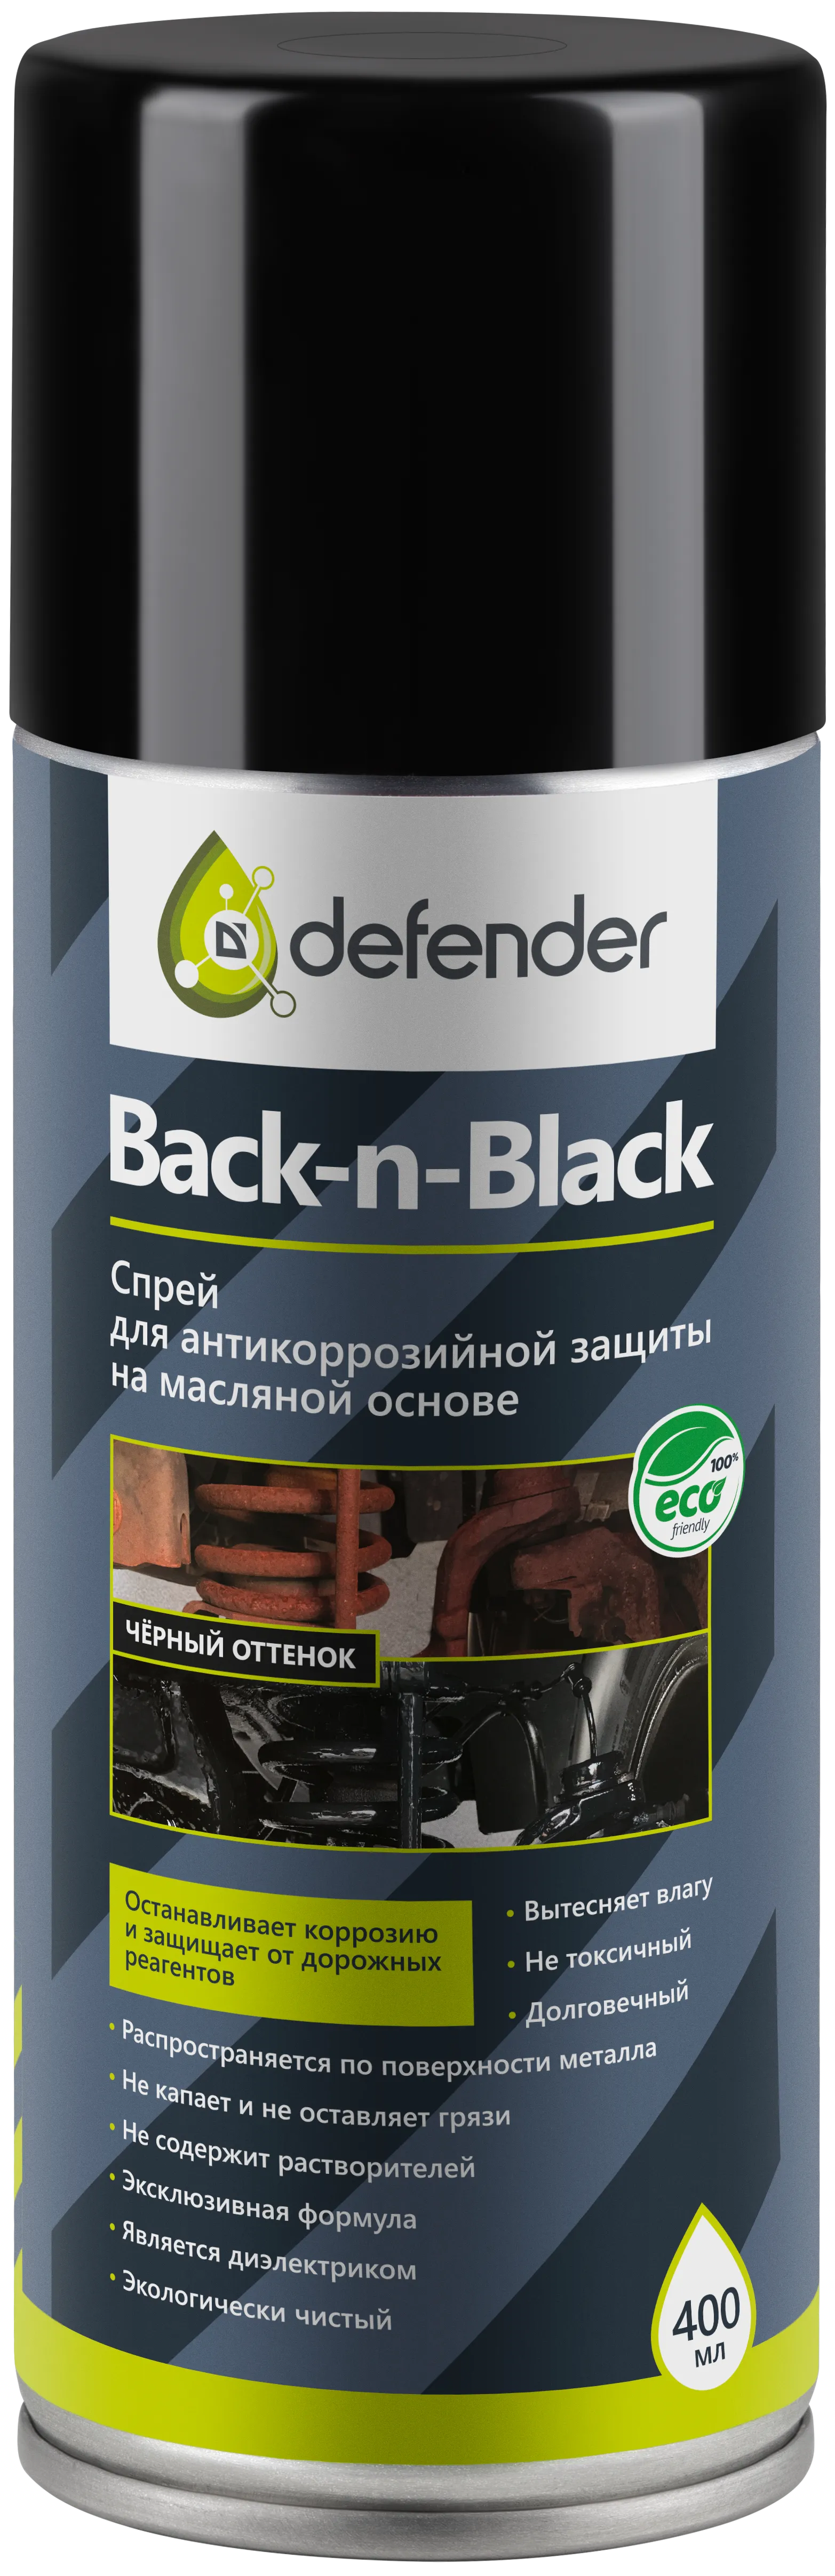 Преимущества антикоррозийных покрытий Back-n-black